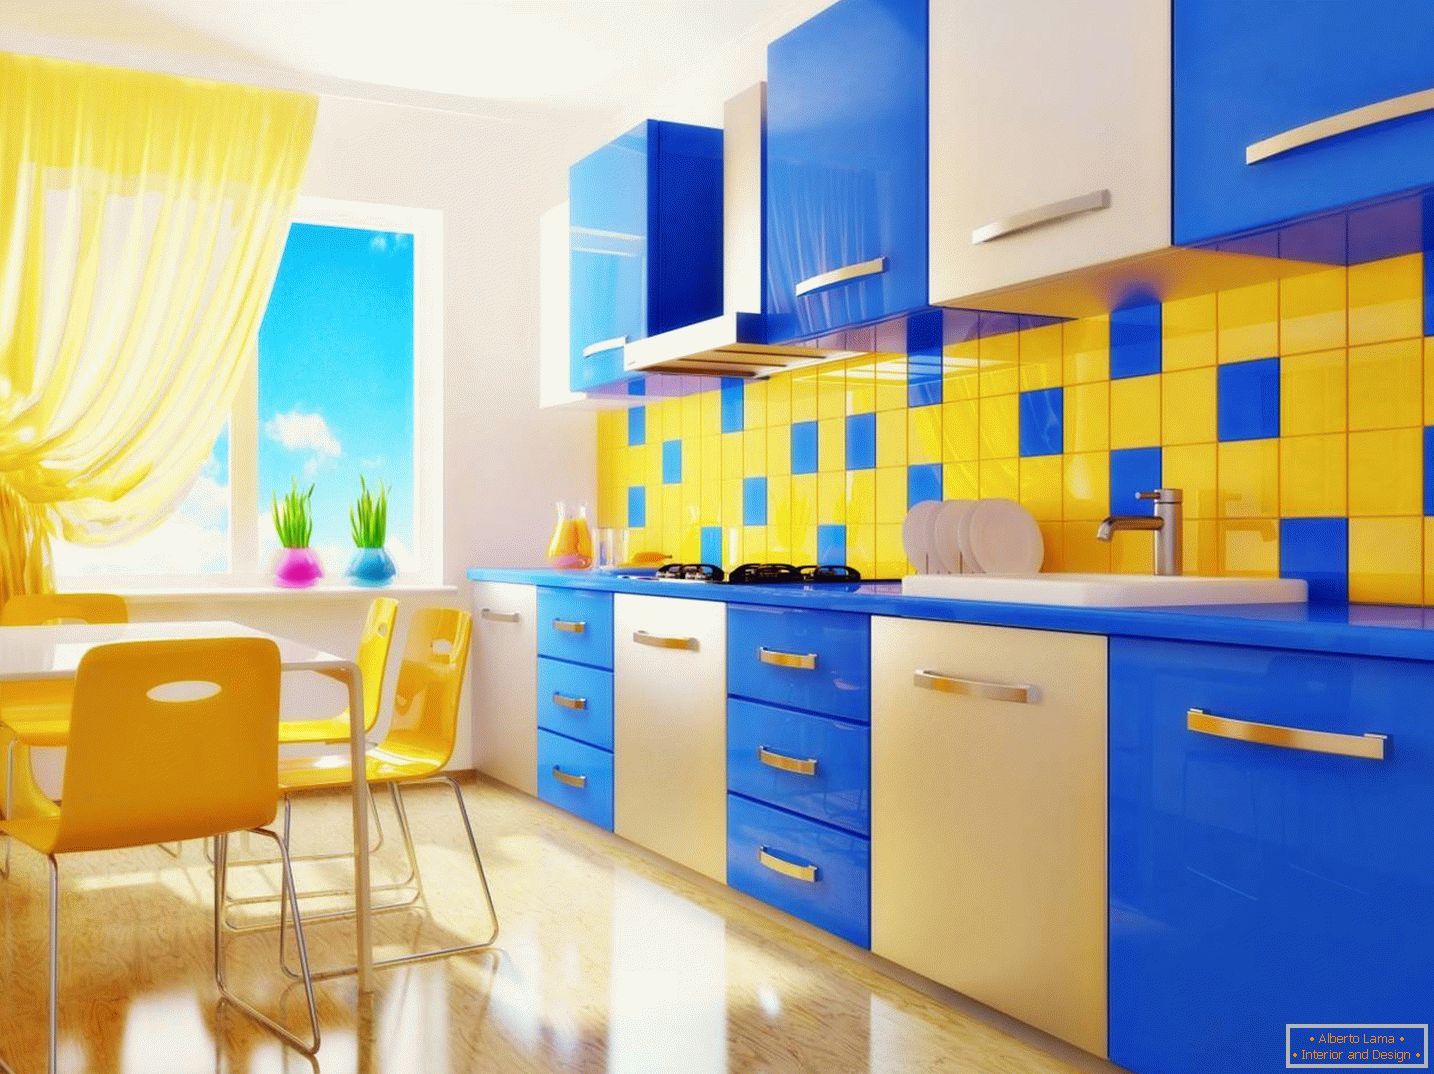 Modrá a žlutá kuchyně